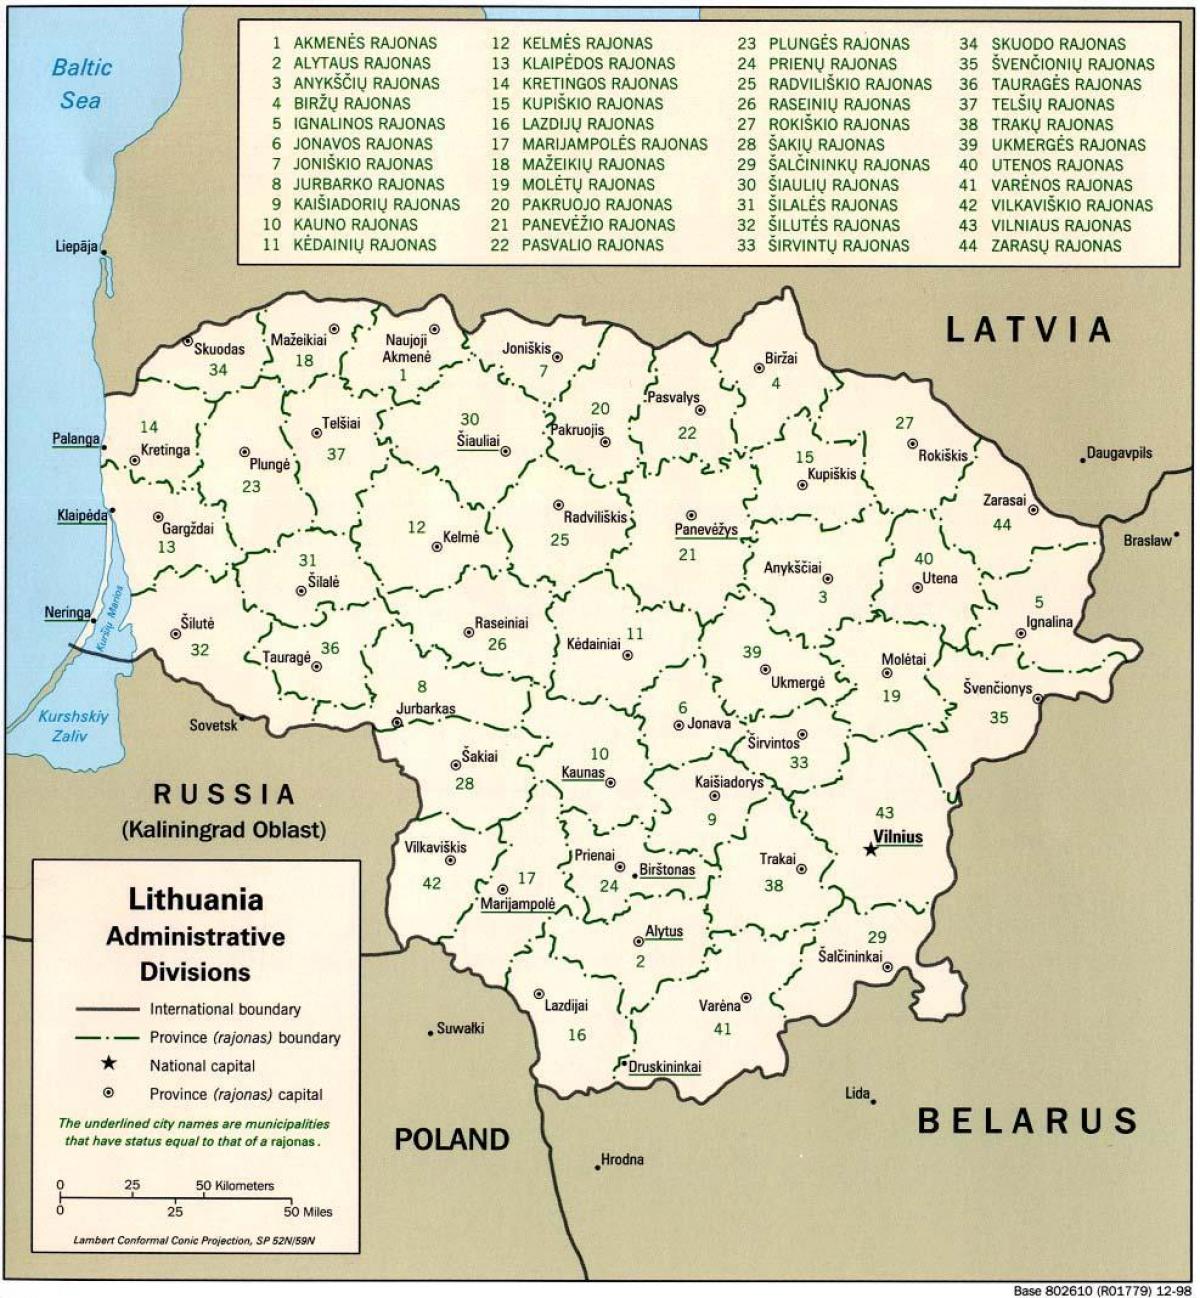 מפה של מפת ליטא עם ערים